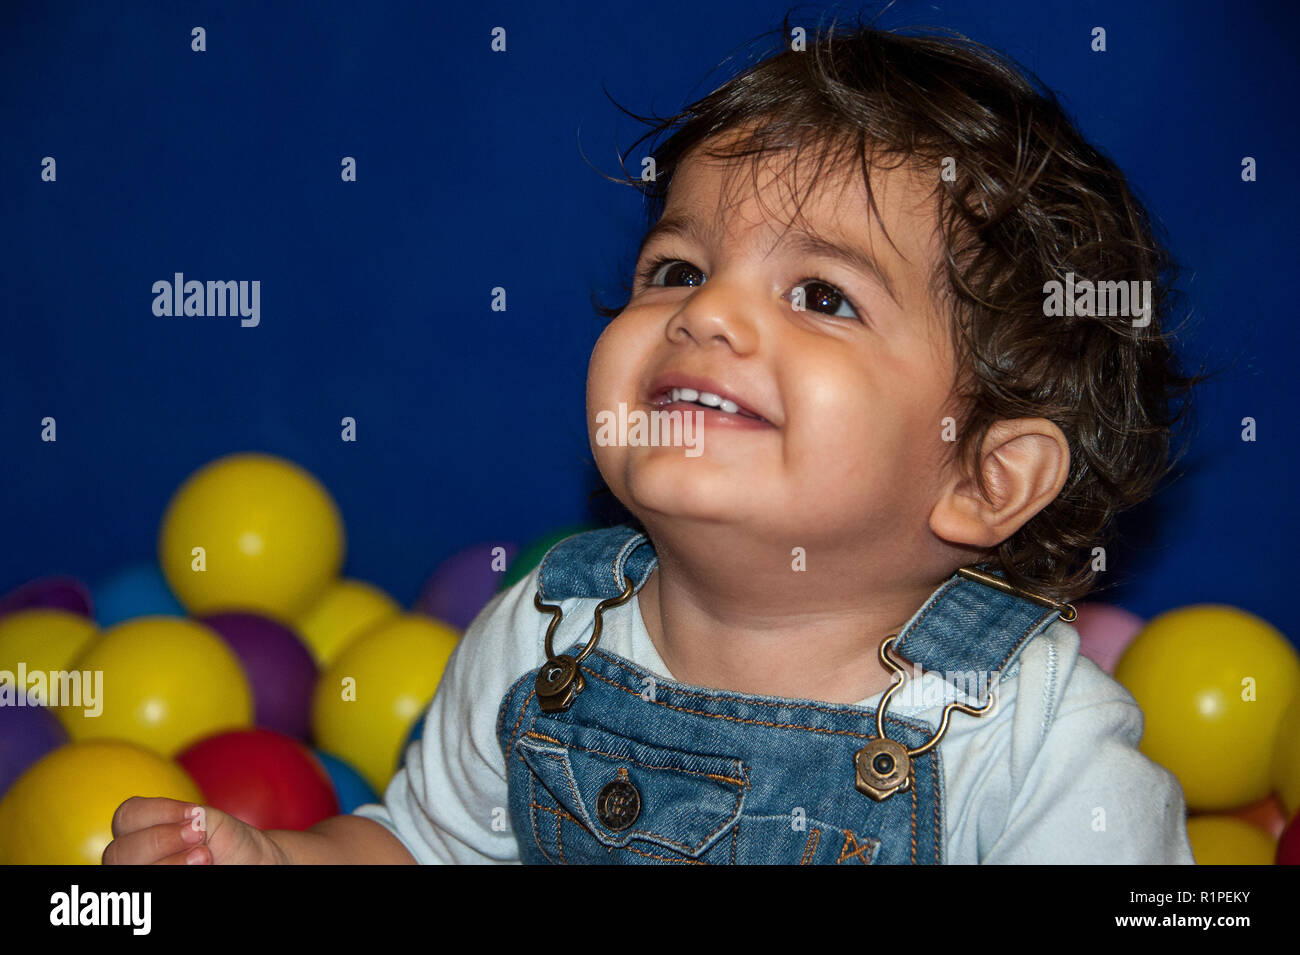 Portrait d'un enfant souriant avec de beaux yeux, assis parmi les boules colorées Banque D'Images